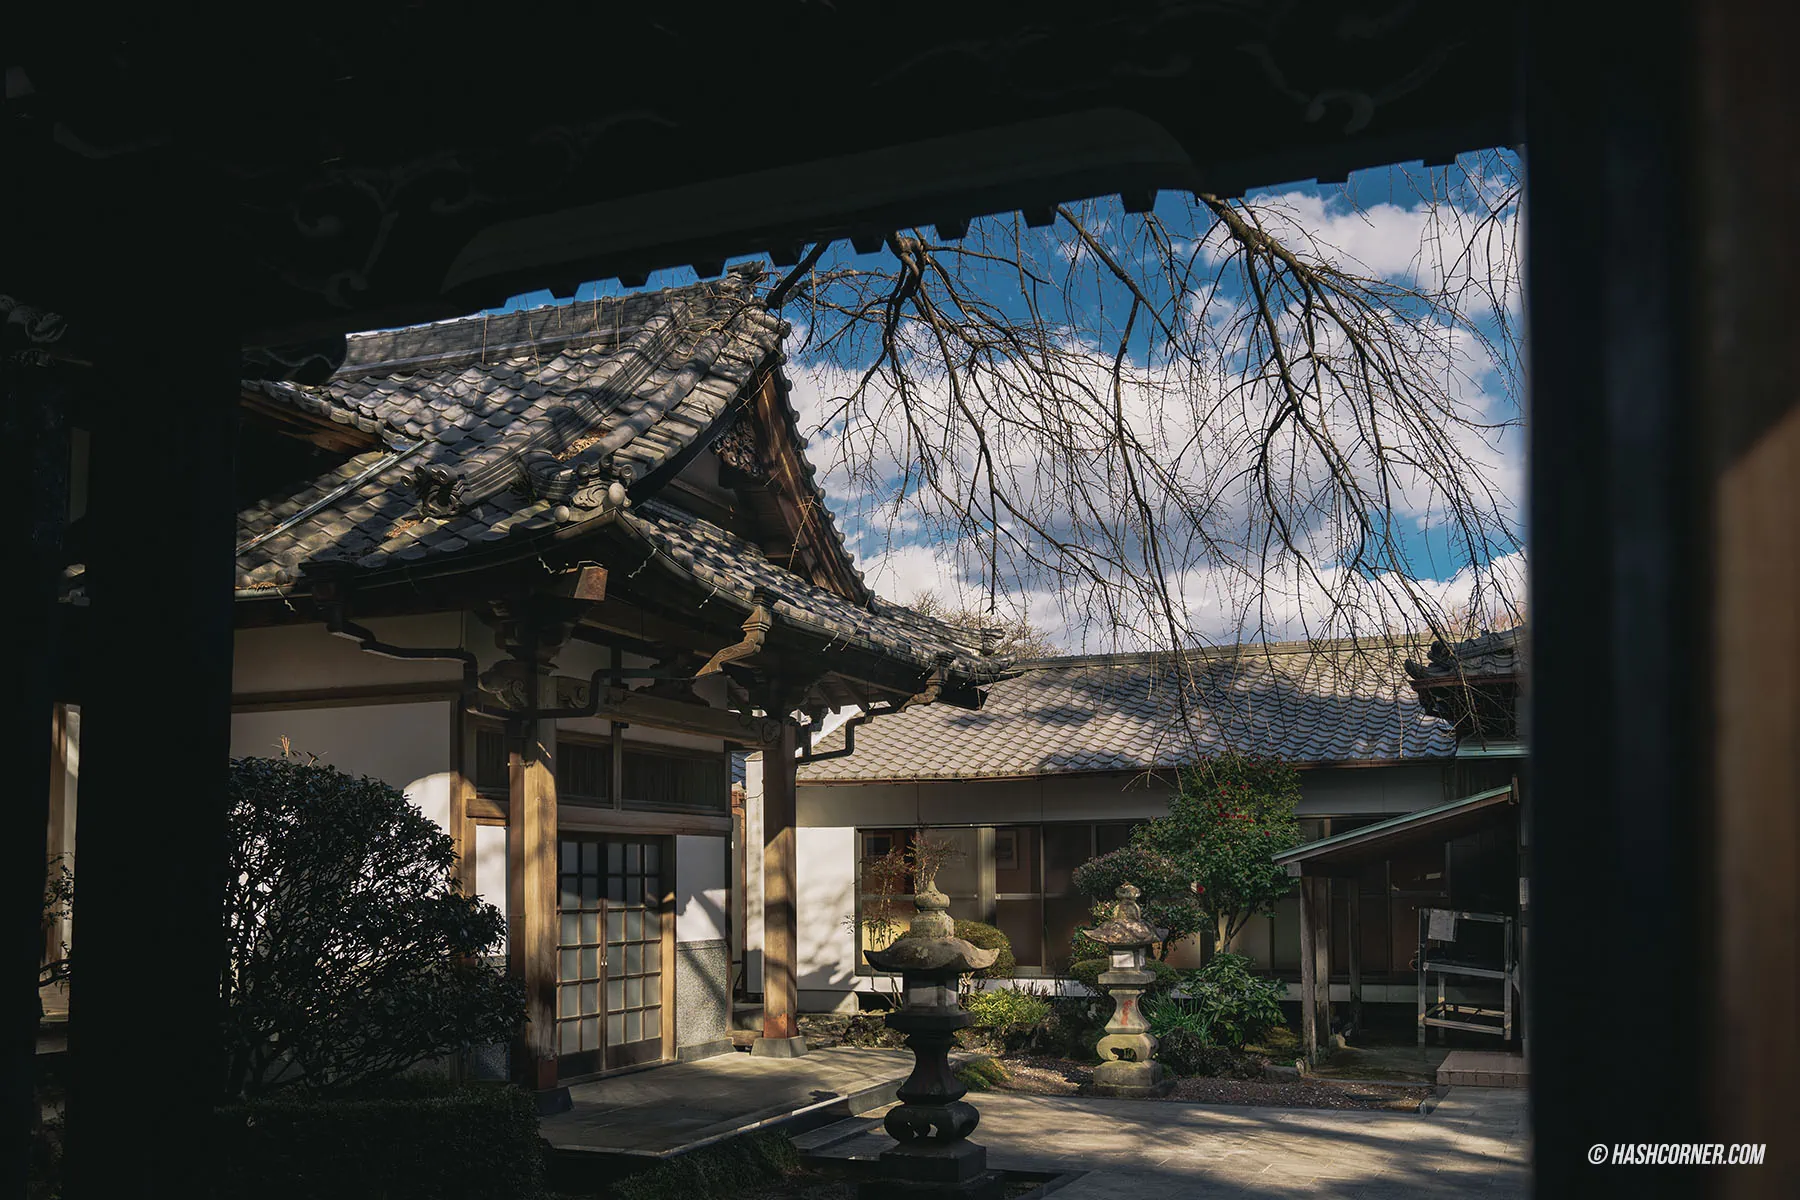 รีวิว วัดไทเซคิจิ (Taisekiji Temple) x ชิซึโอกะ วัดเก่าแก่วิวฟูจิซังที่หลายคนยังไม่รู้จัก